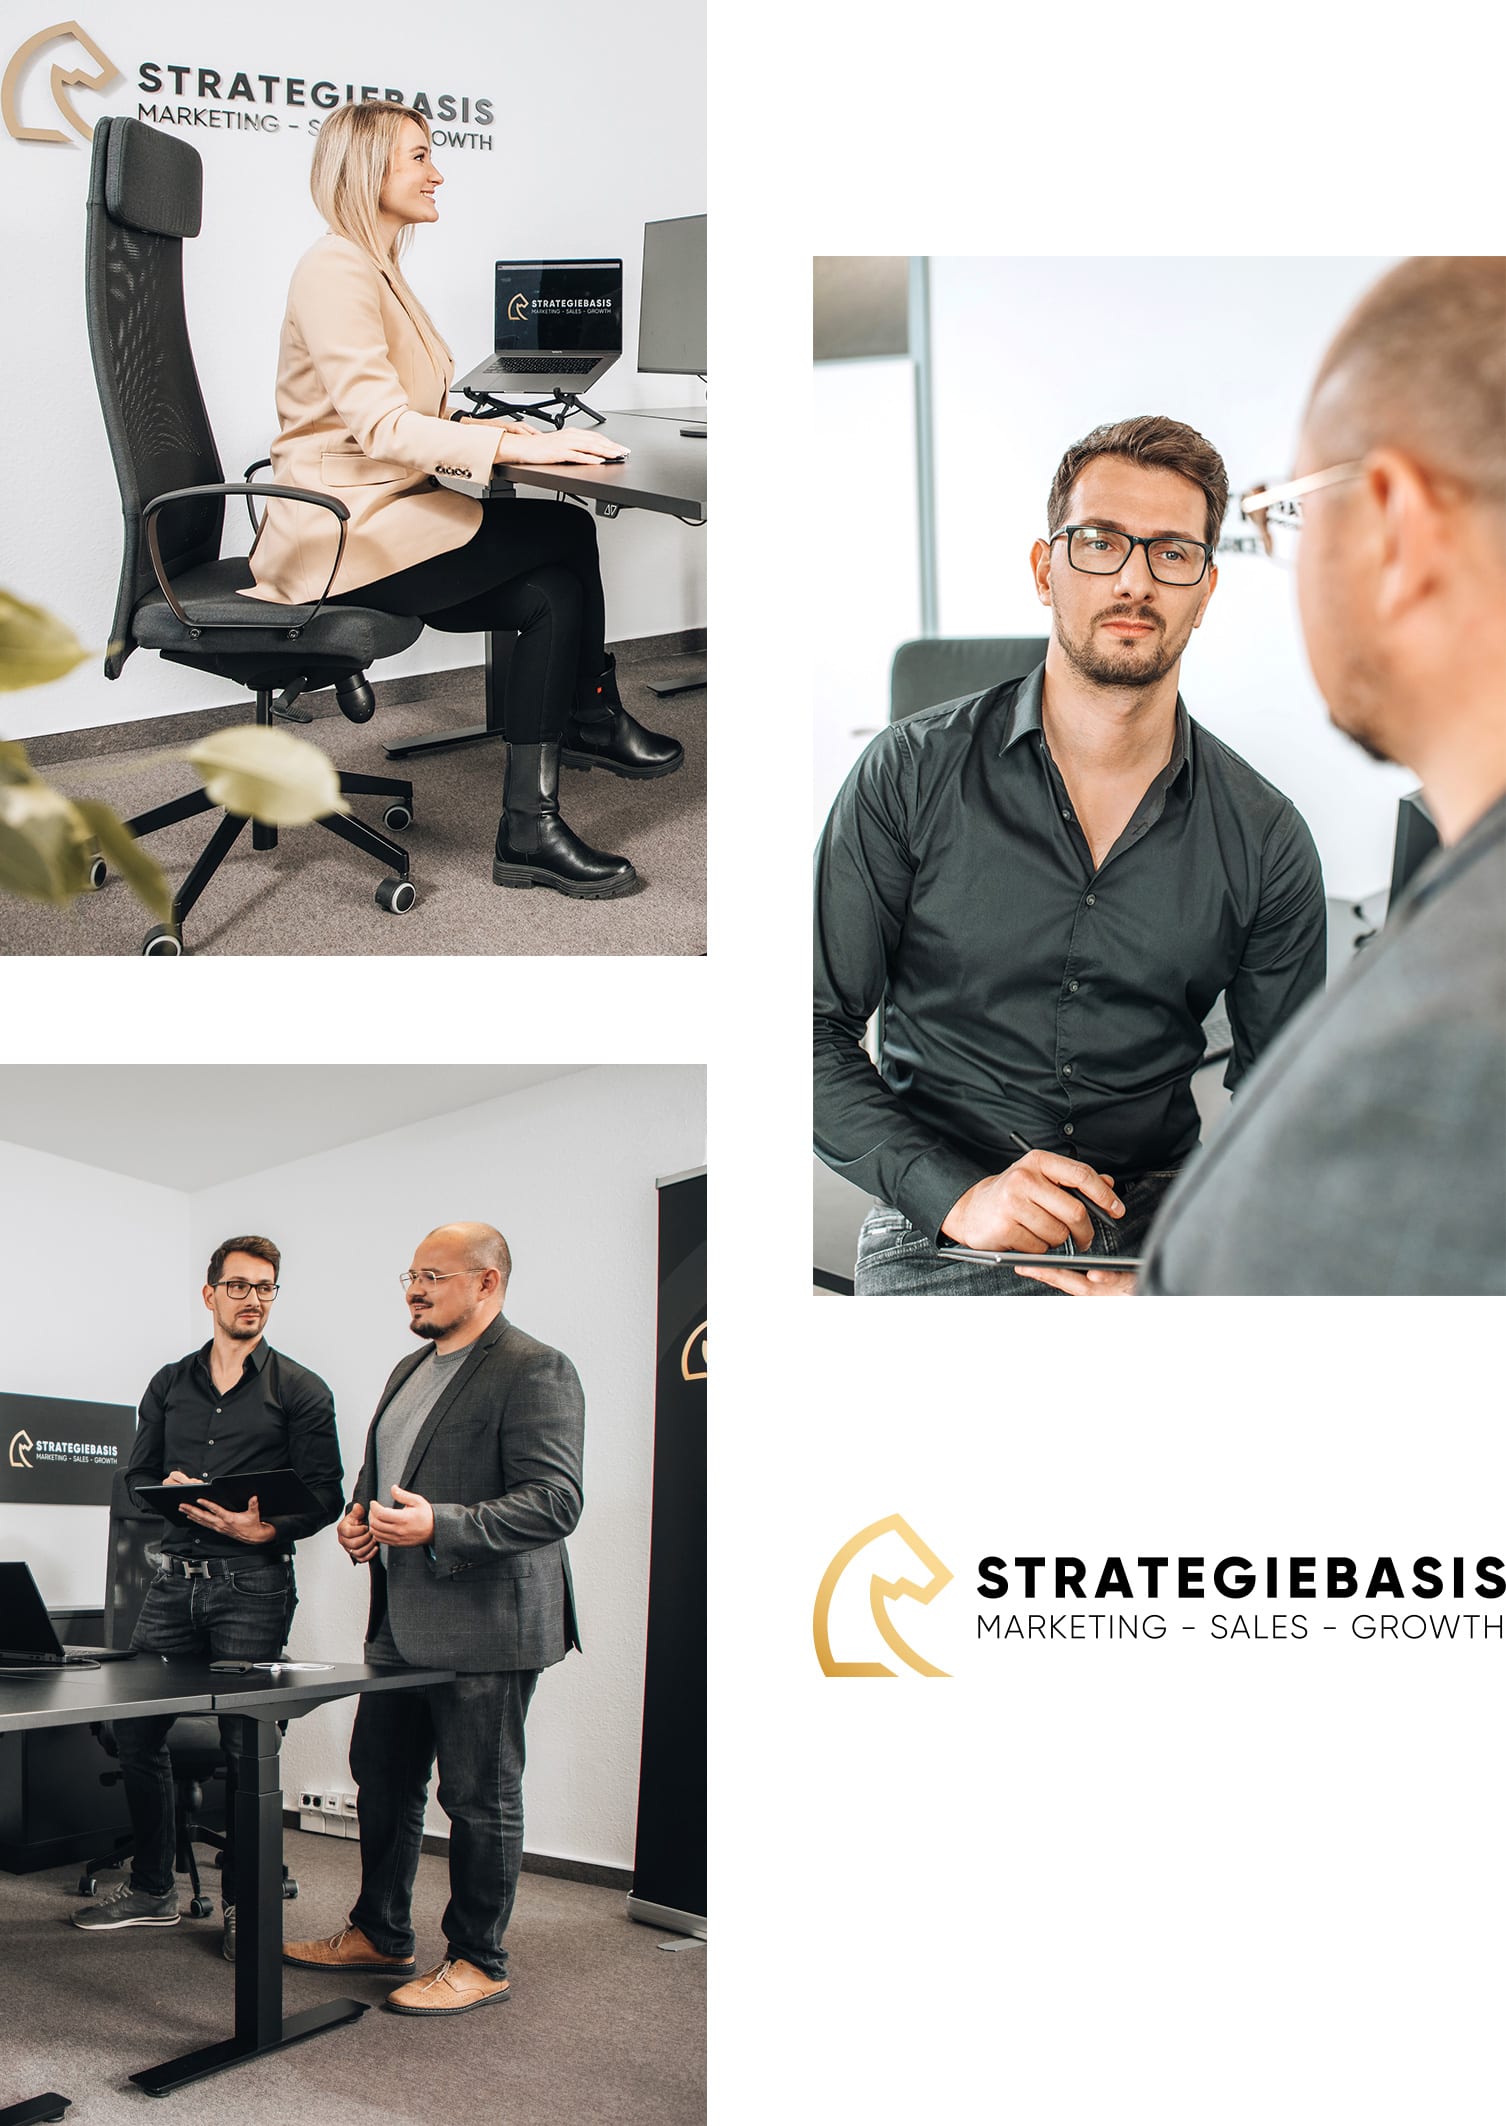 Strategiebasis GmbH